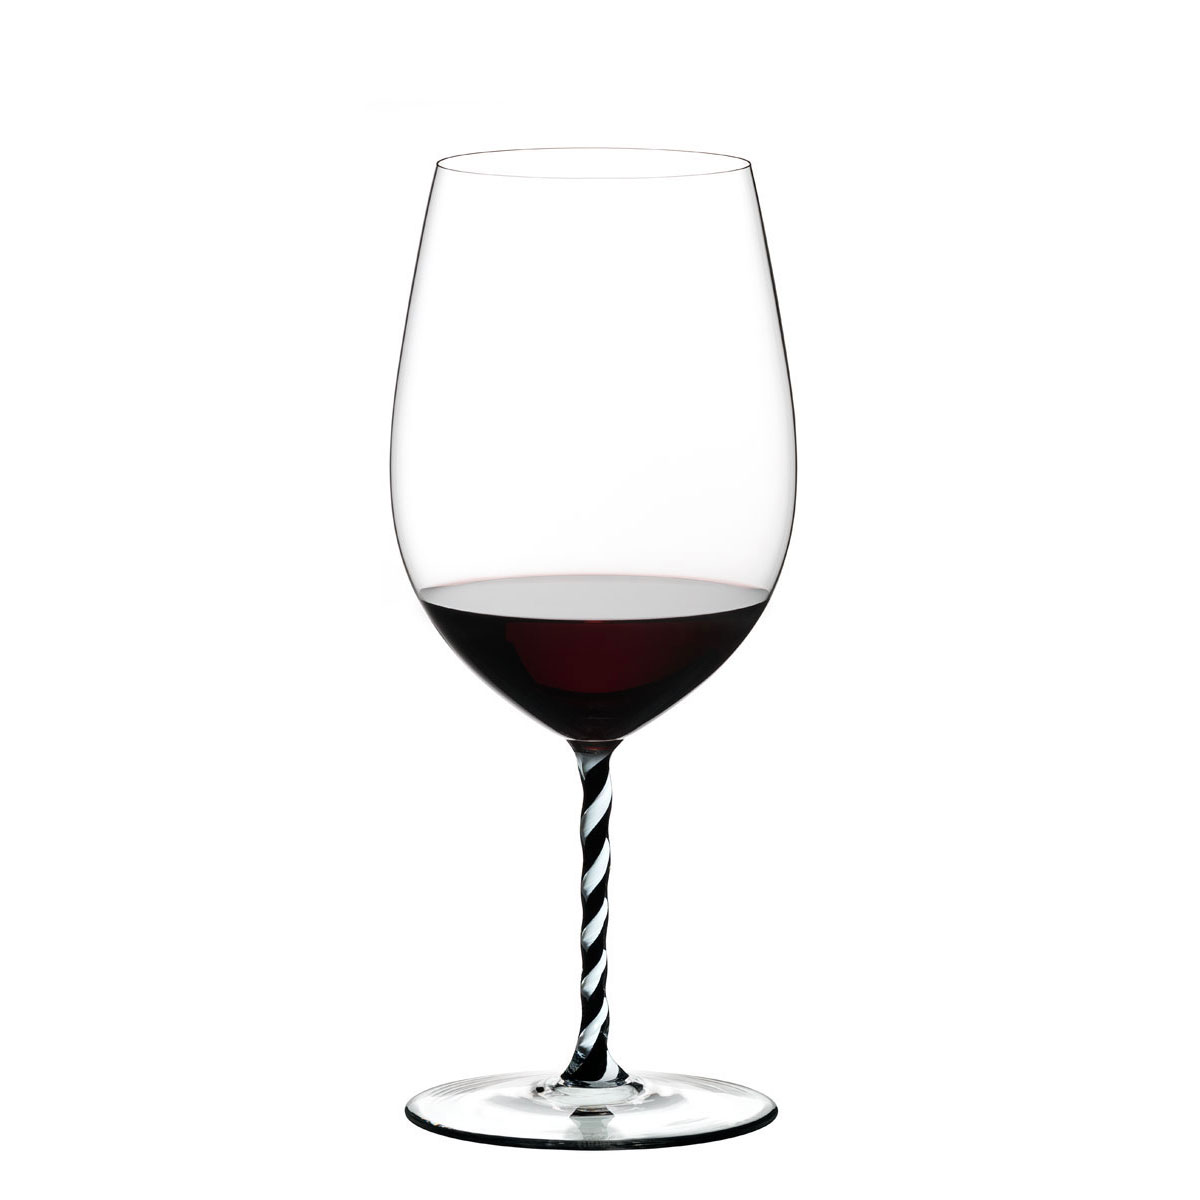 Riedel Fatto A Mano, Bordeaux Grand Cru, Black and White Twist Wine Glass, Single